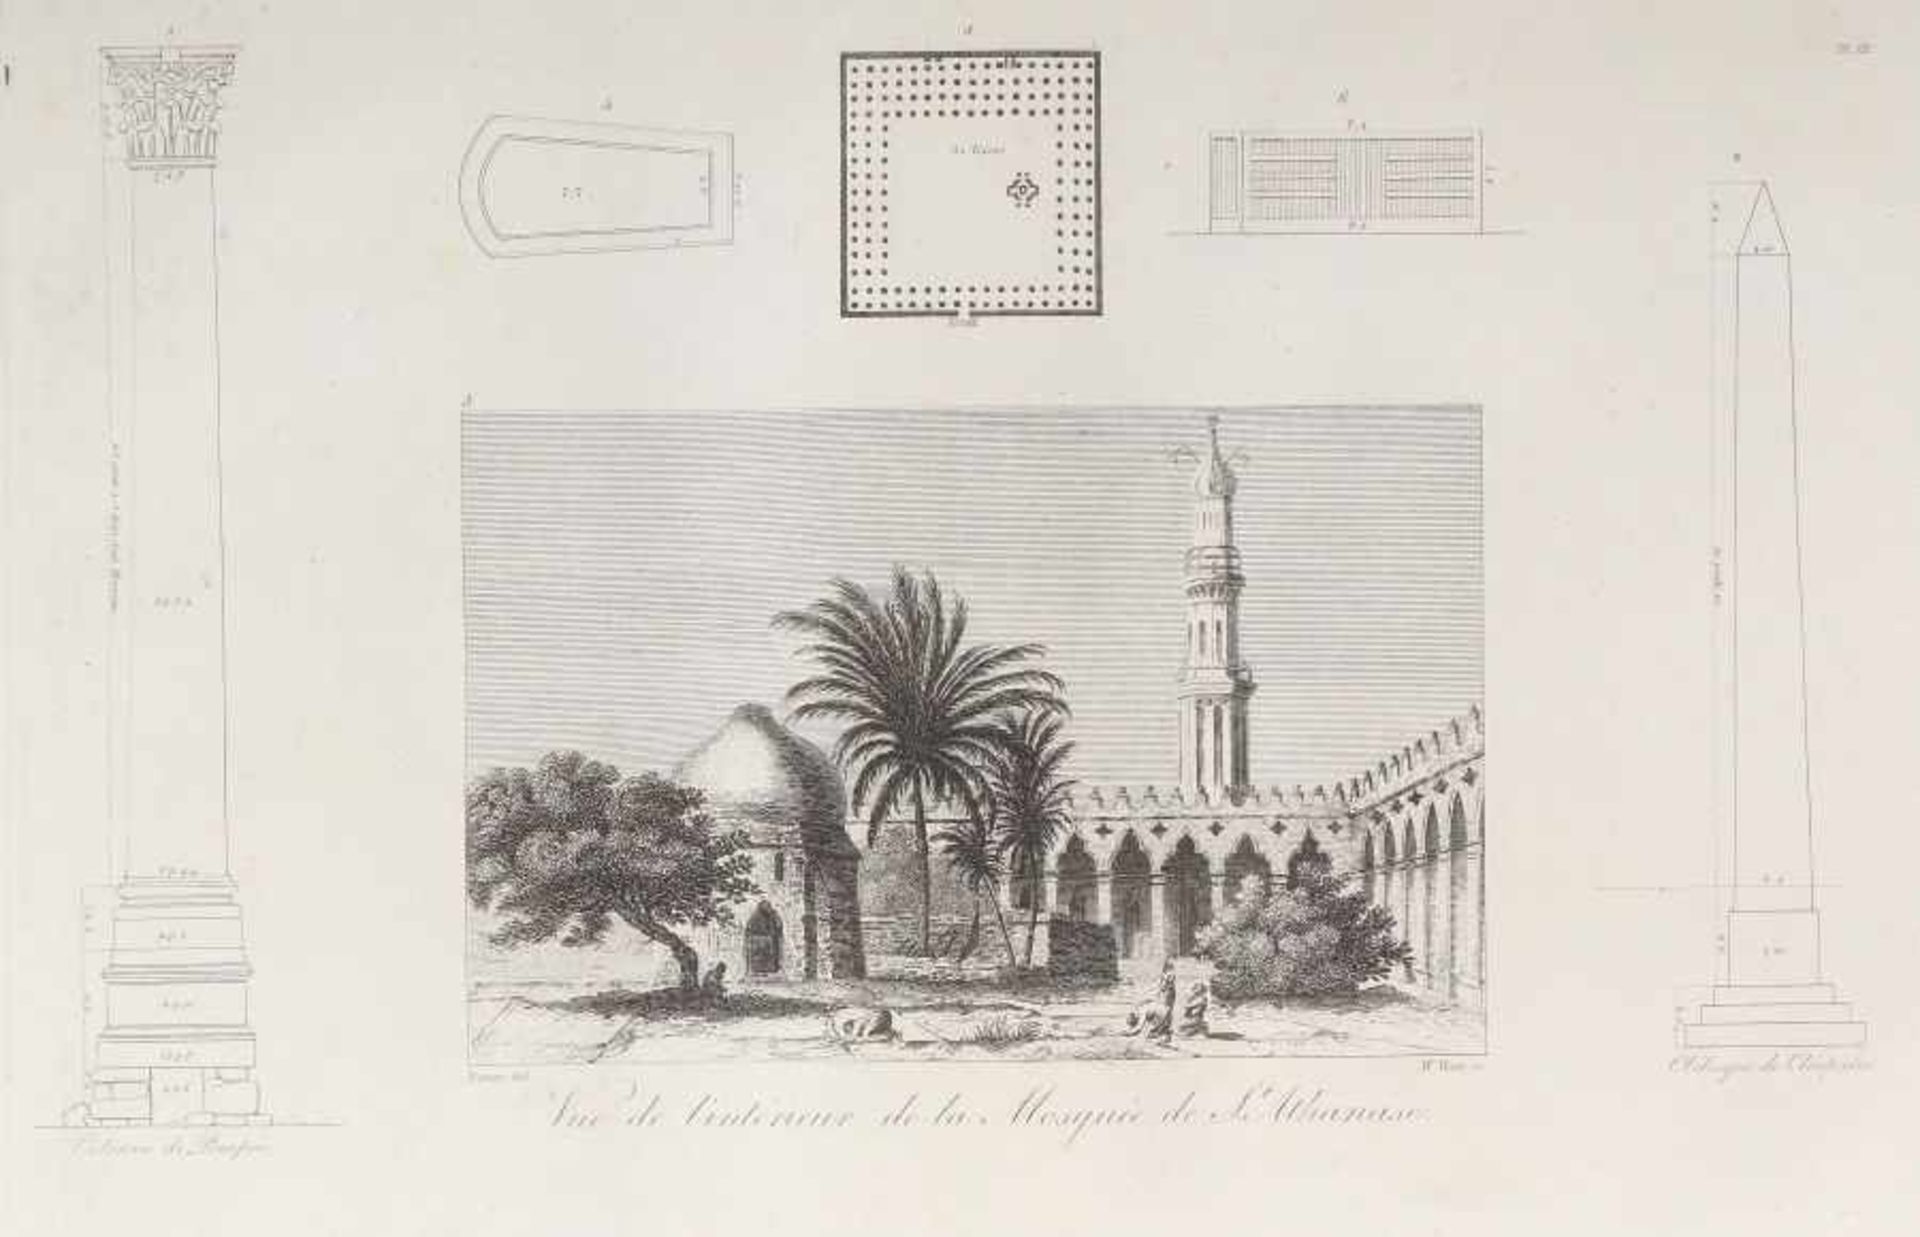 Denon, Vivant Voyages des la Basse et la Haute Egypte pendant les Campagnes de Bonaparte, Atlas, mit - Image 4 of 7